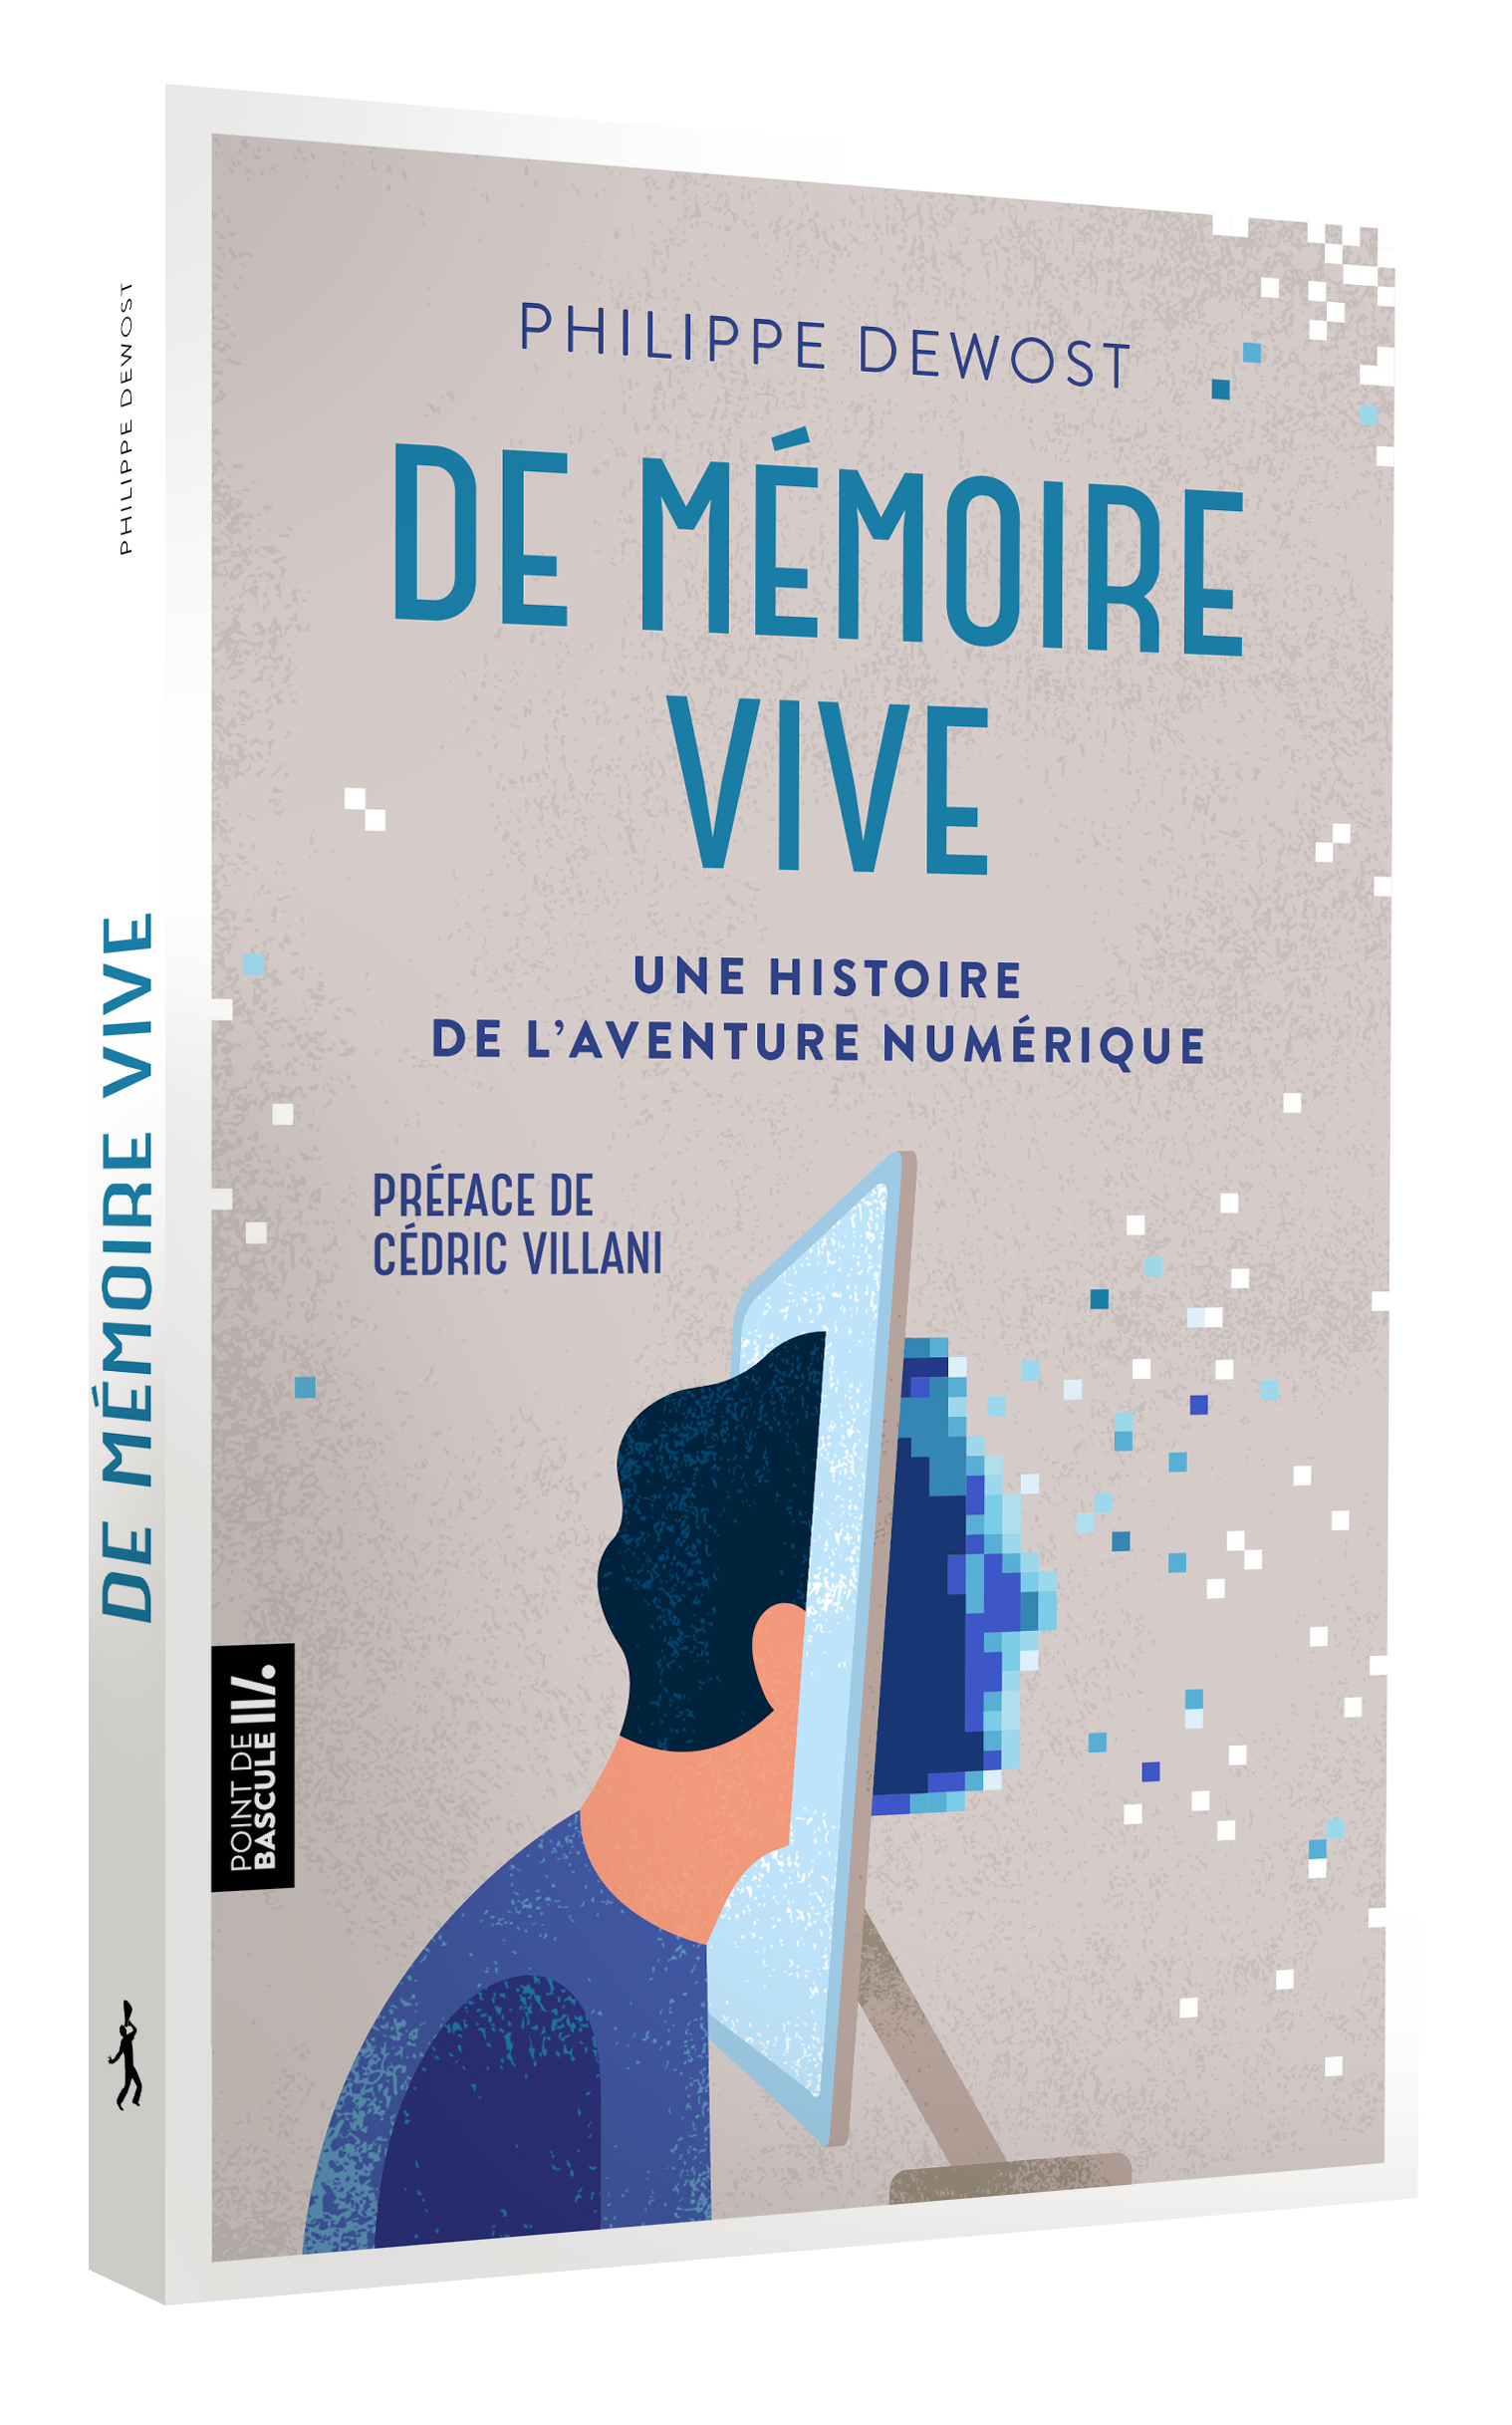 Couverture en 3D du livre "De mémoire vive"